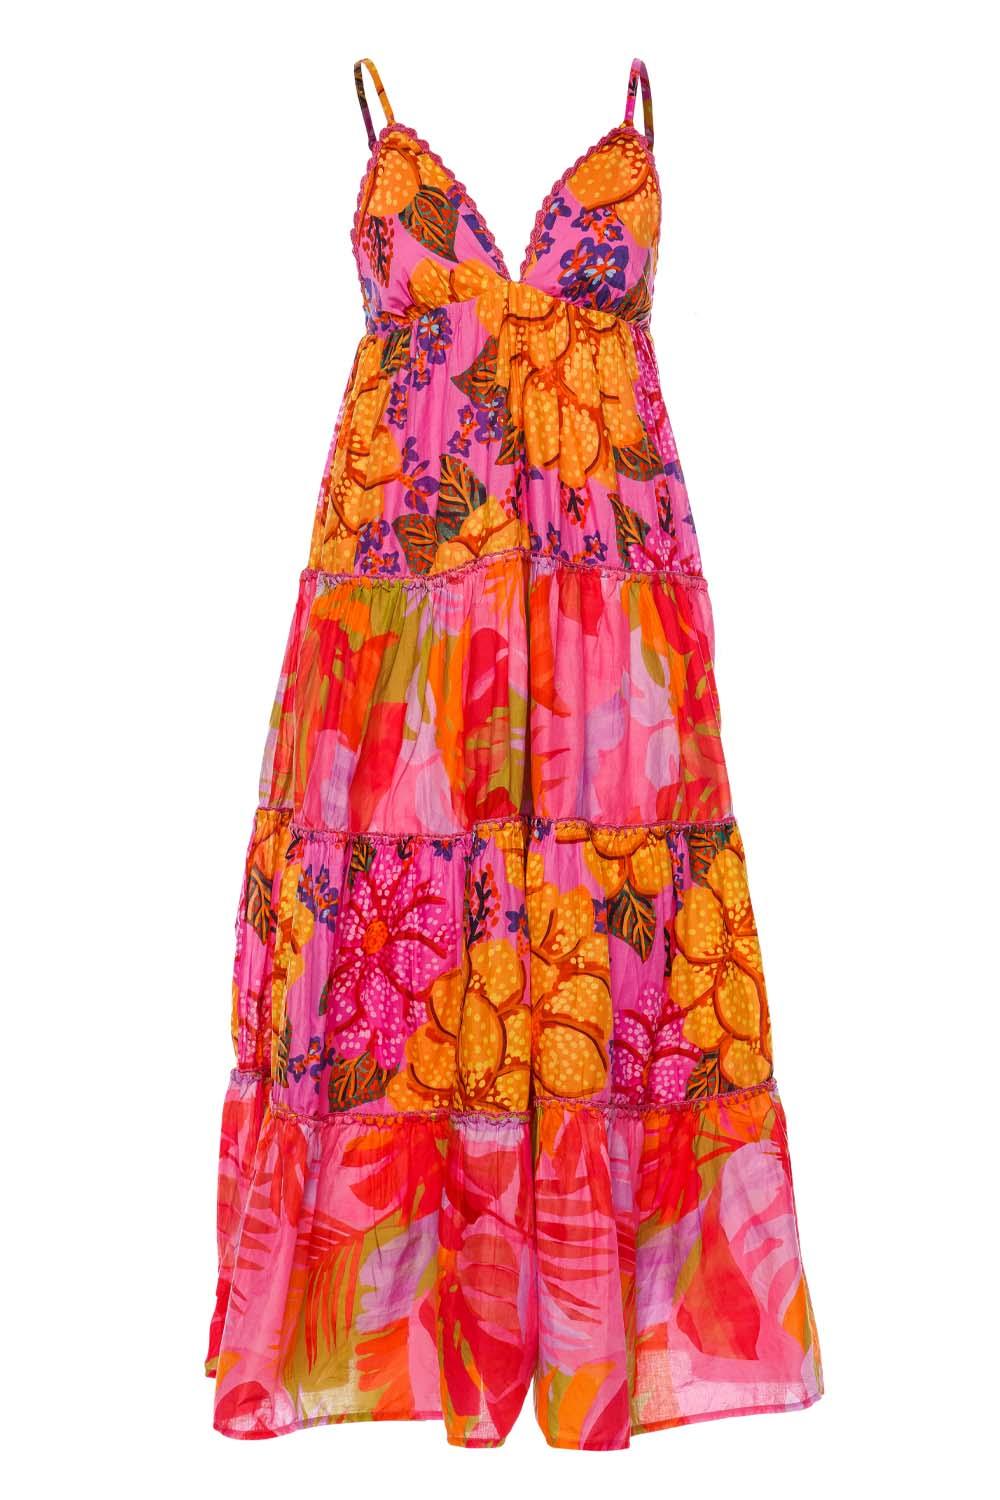 FARM Rio Pink Mixed Print Tiered Maxi Dress | Lyst